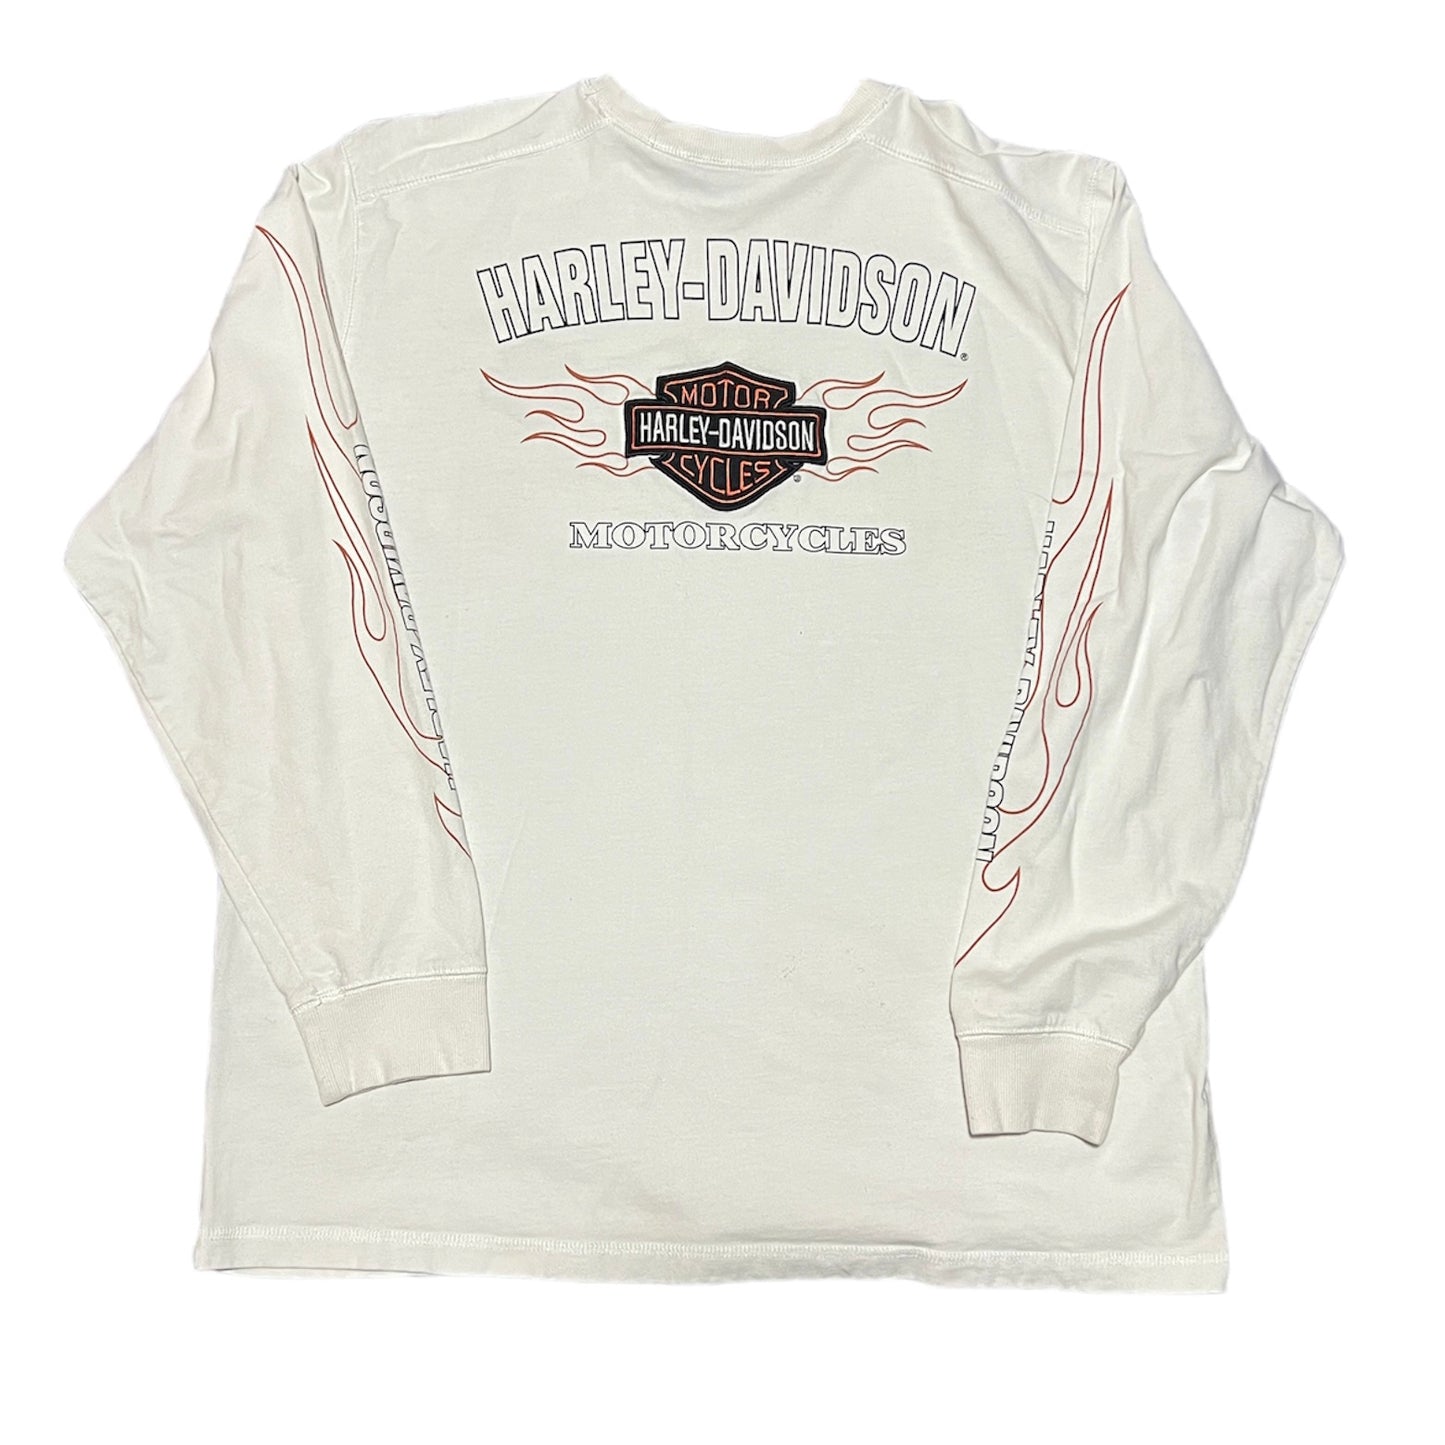 Harley Davidson Crewneck Sweatshirt White Double Sided Embroidered Size X-Large